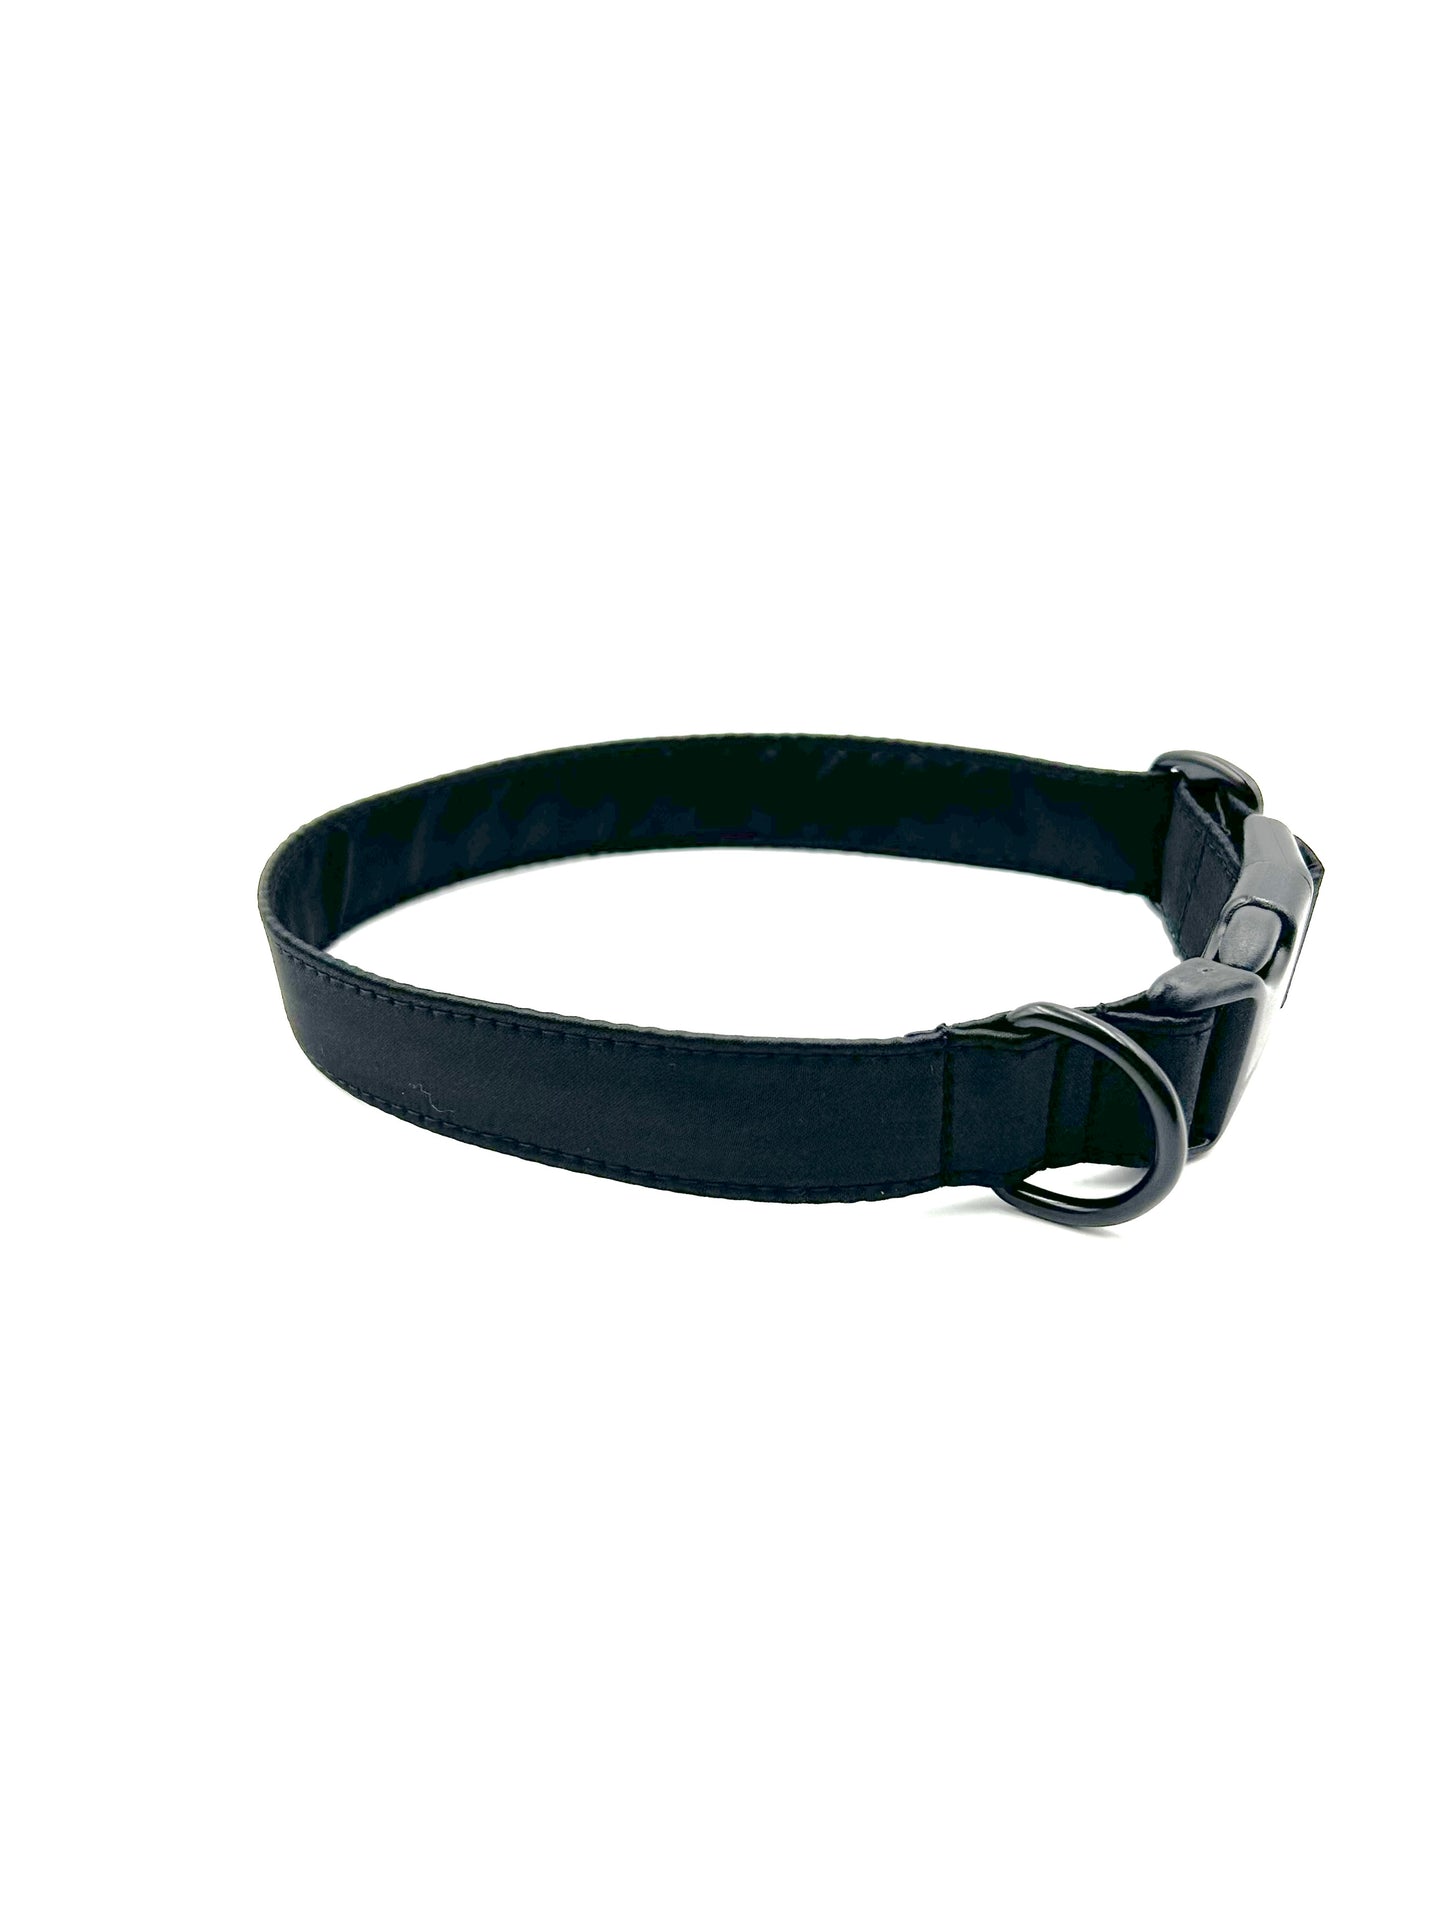 Black Satin Wedding Dog Collar